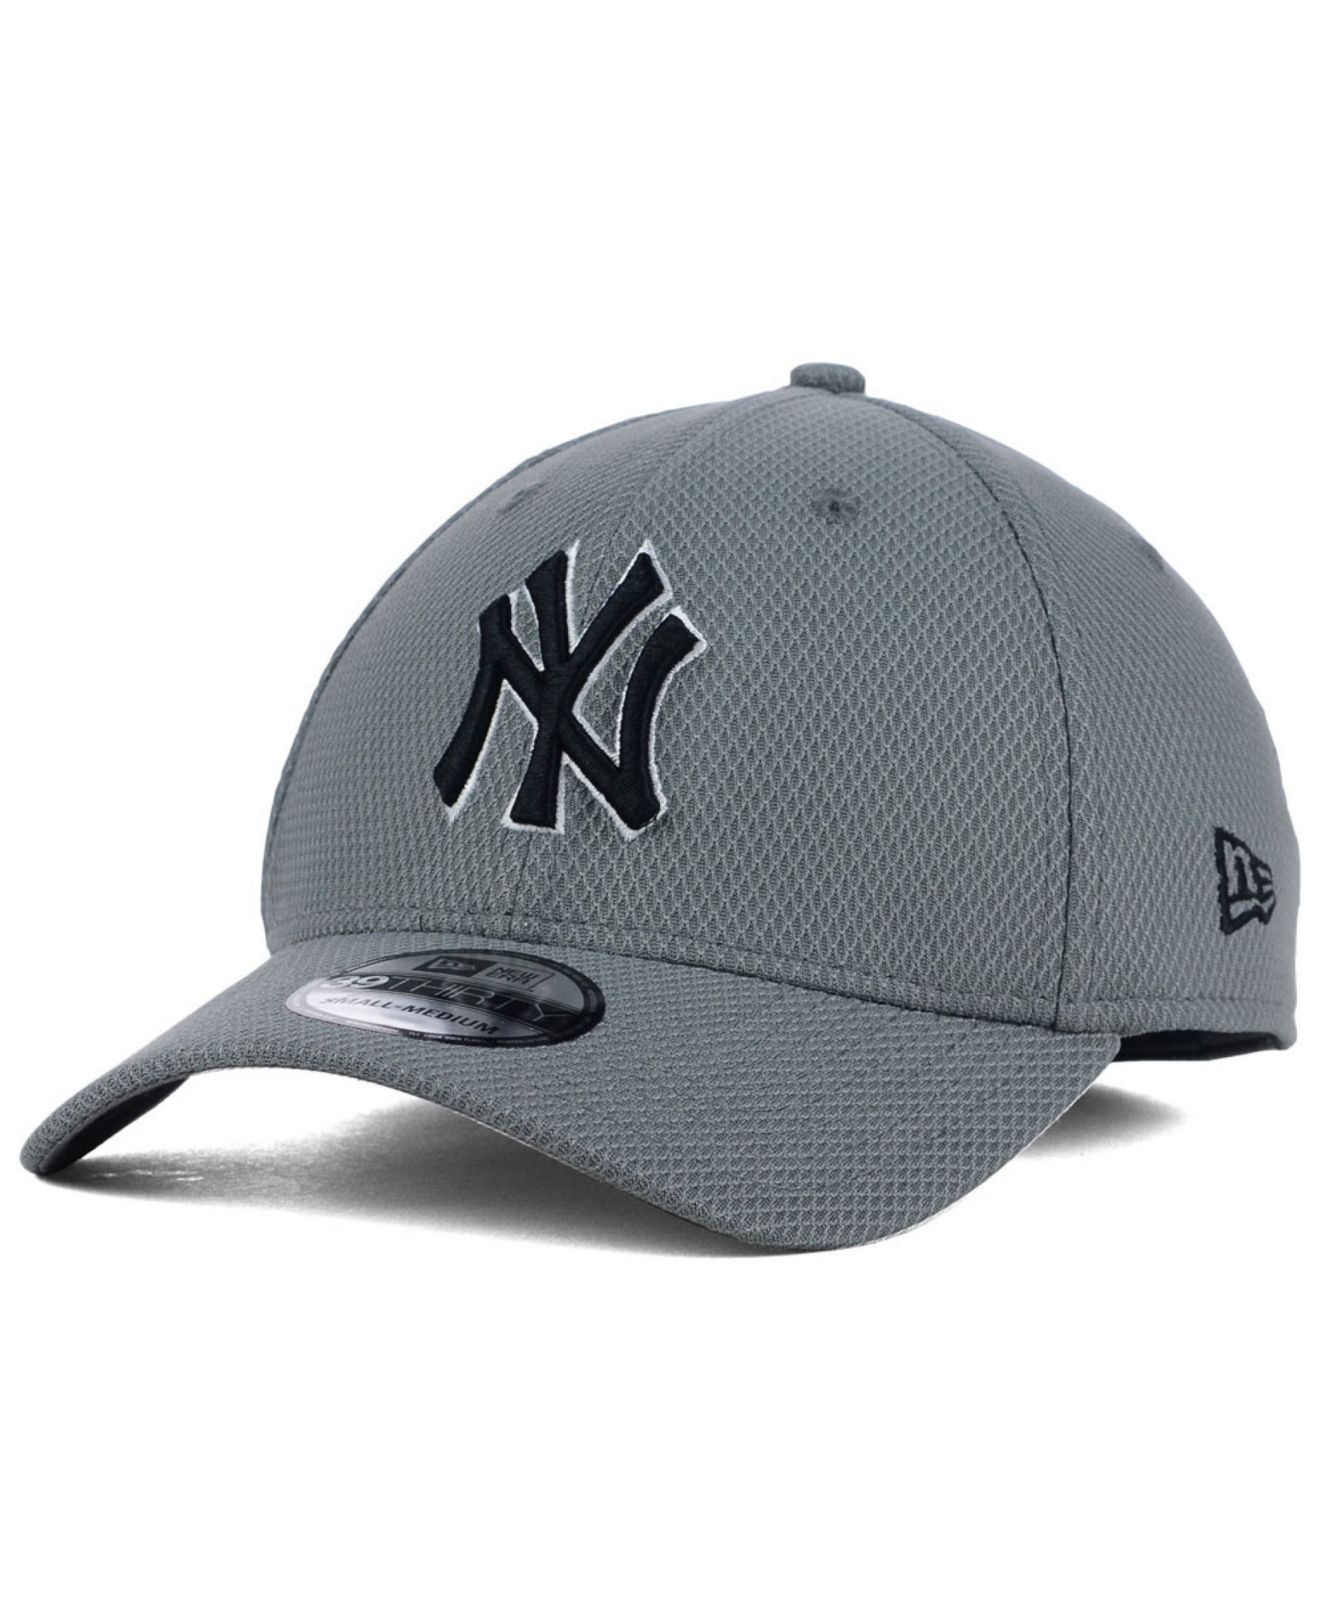 Ktz New York Yankees Diamond Era Gray Black White 39thirty Cap in Gray ...